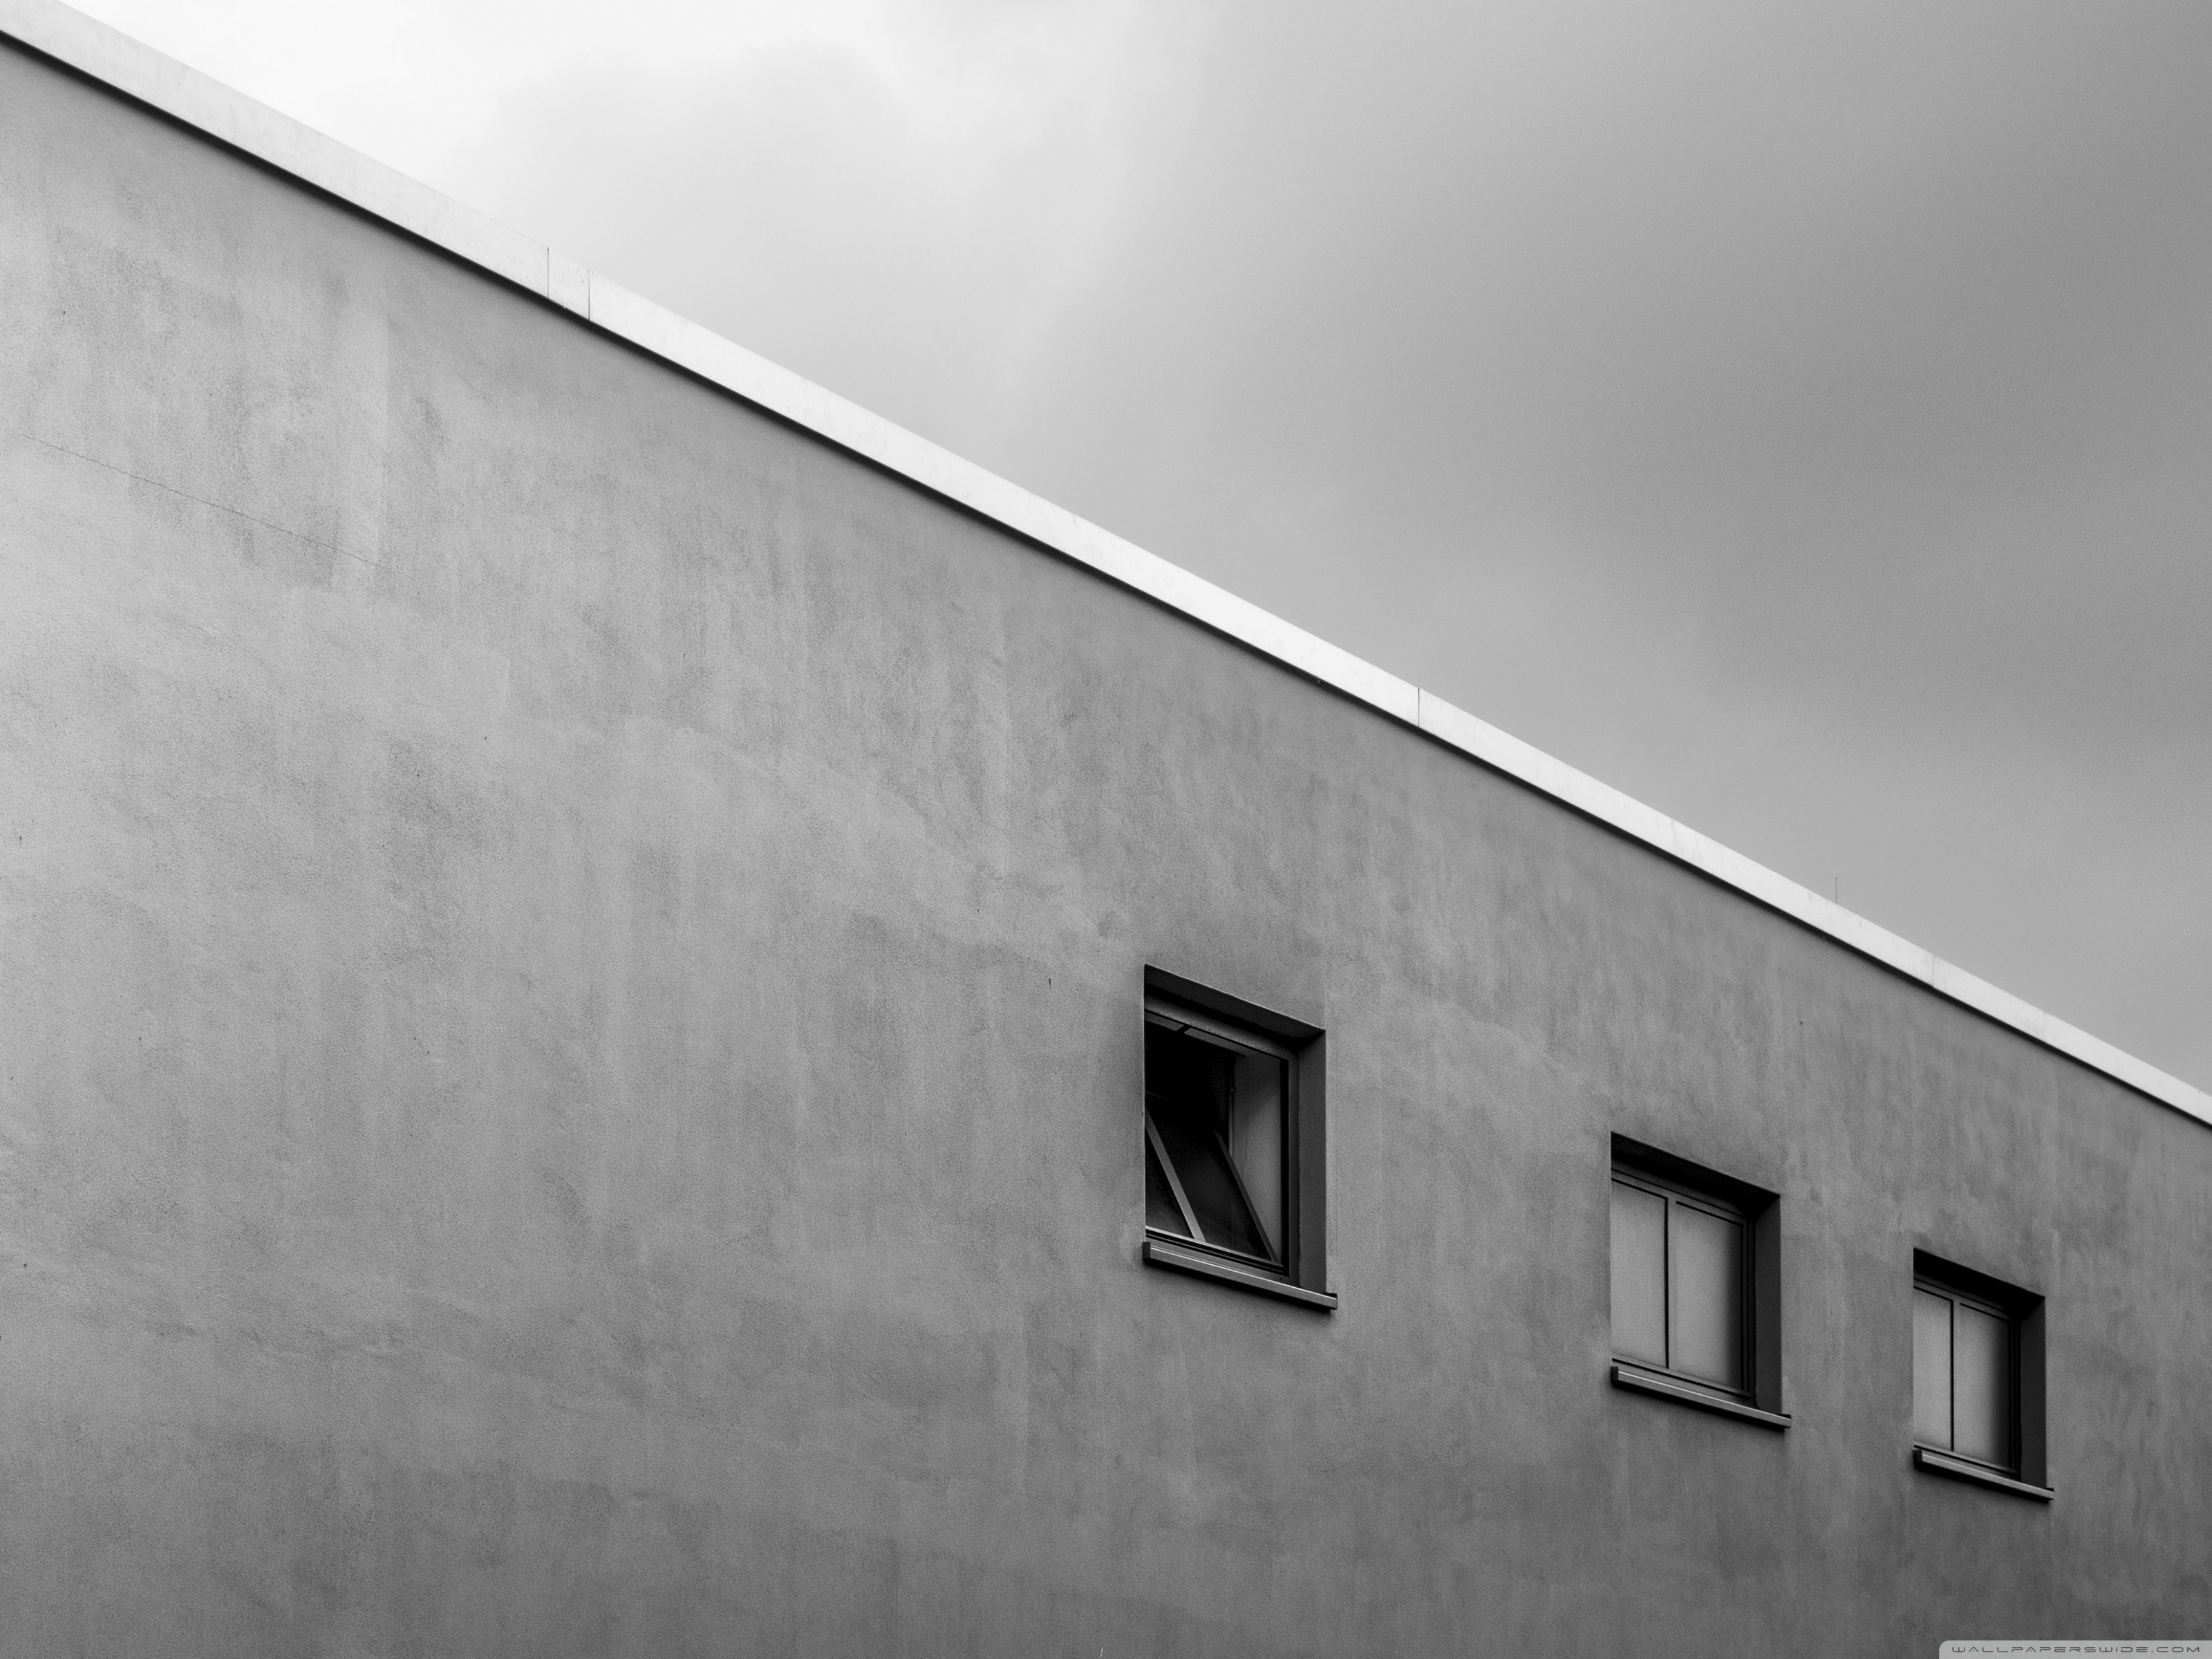 minimalistische architektur tapete,weiß,die architektur,wand,tagsüber,linie